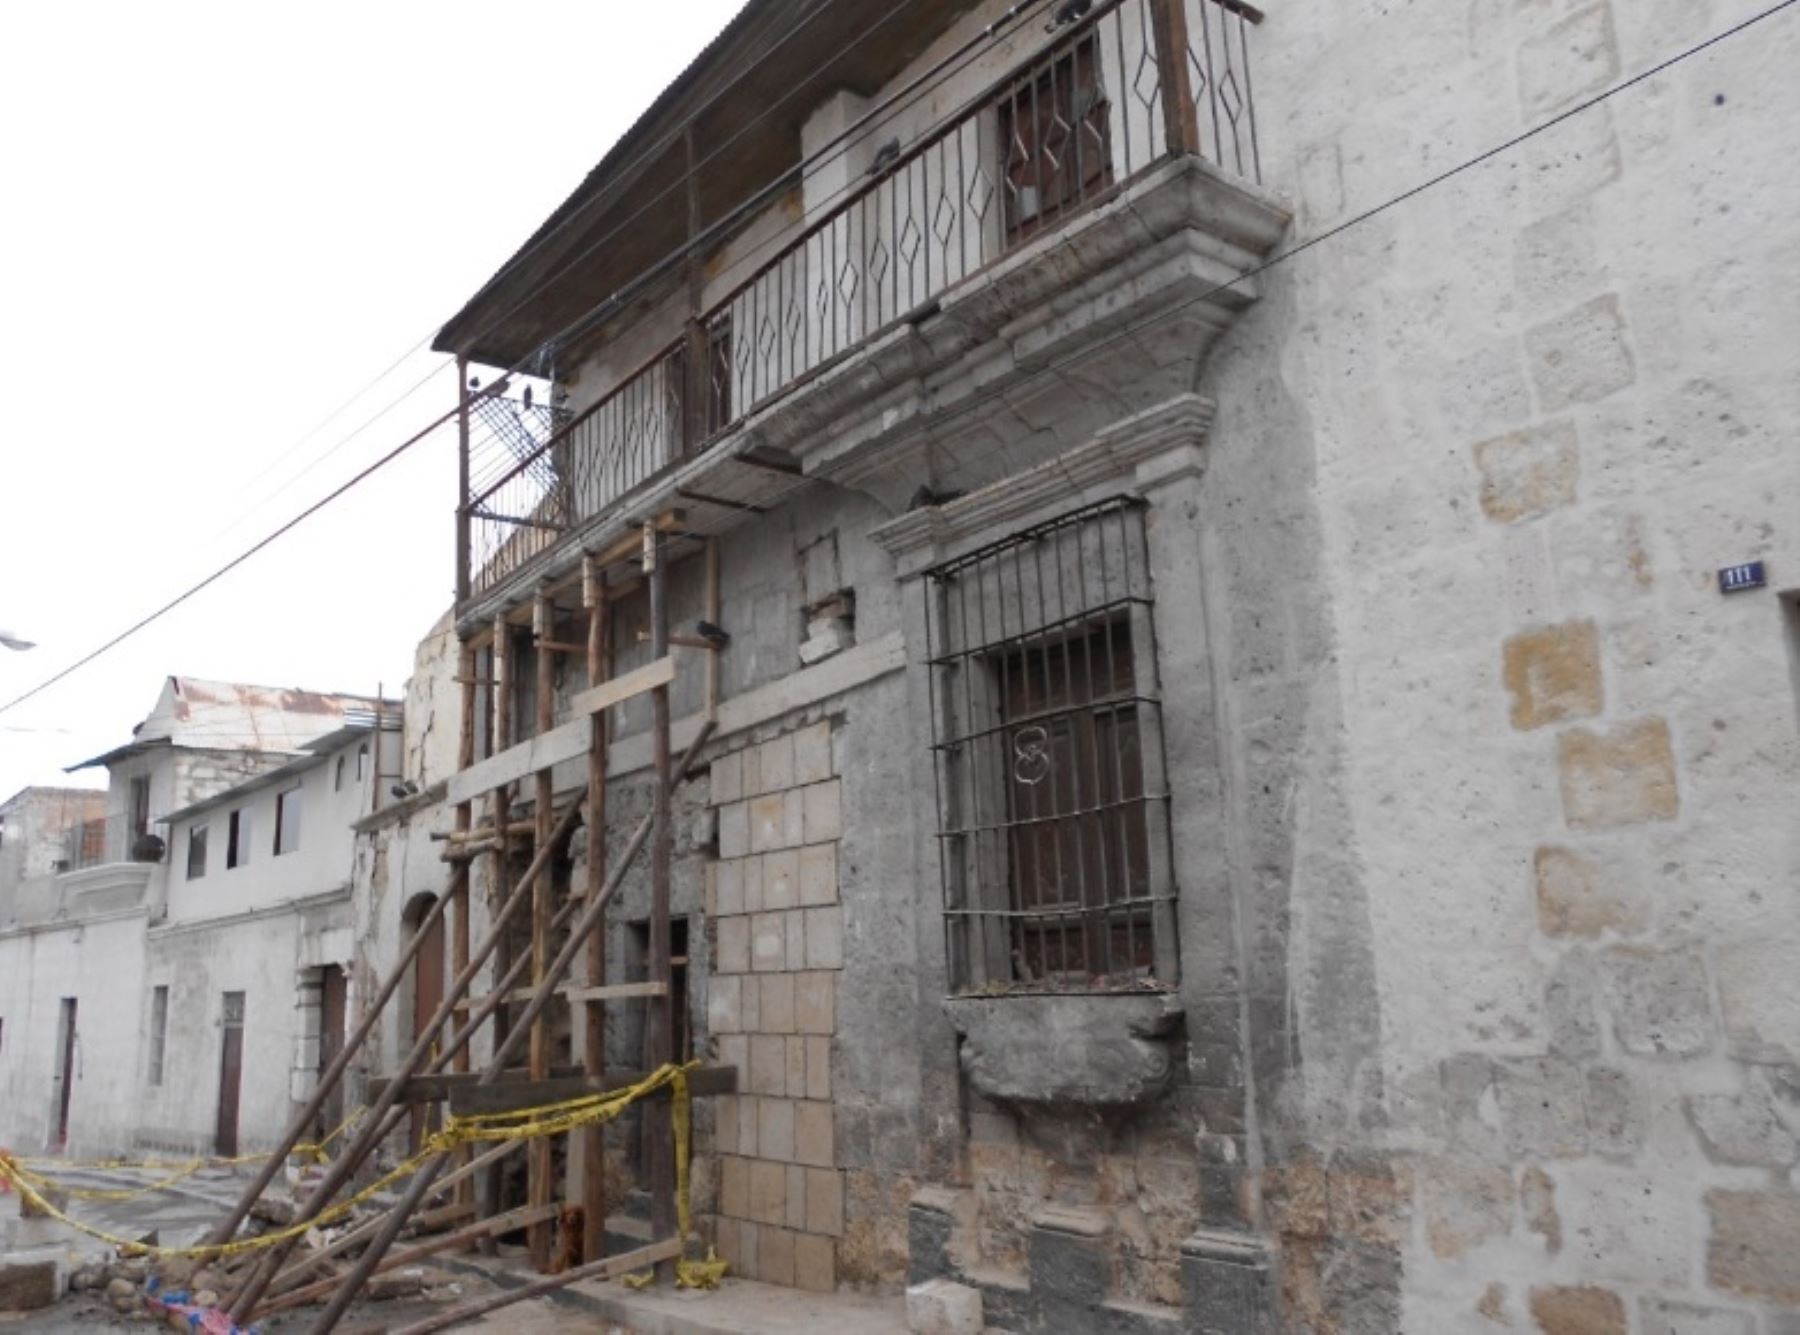 La municipalidad provincial de Arequipa ejecuta trabajos de conservación en el barrio tradicional de La Recoleta y Beaterio.